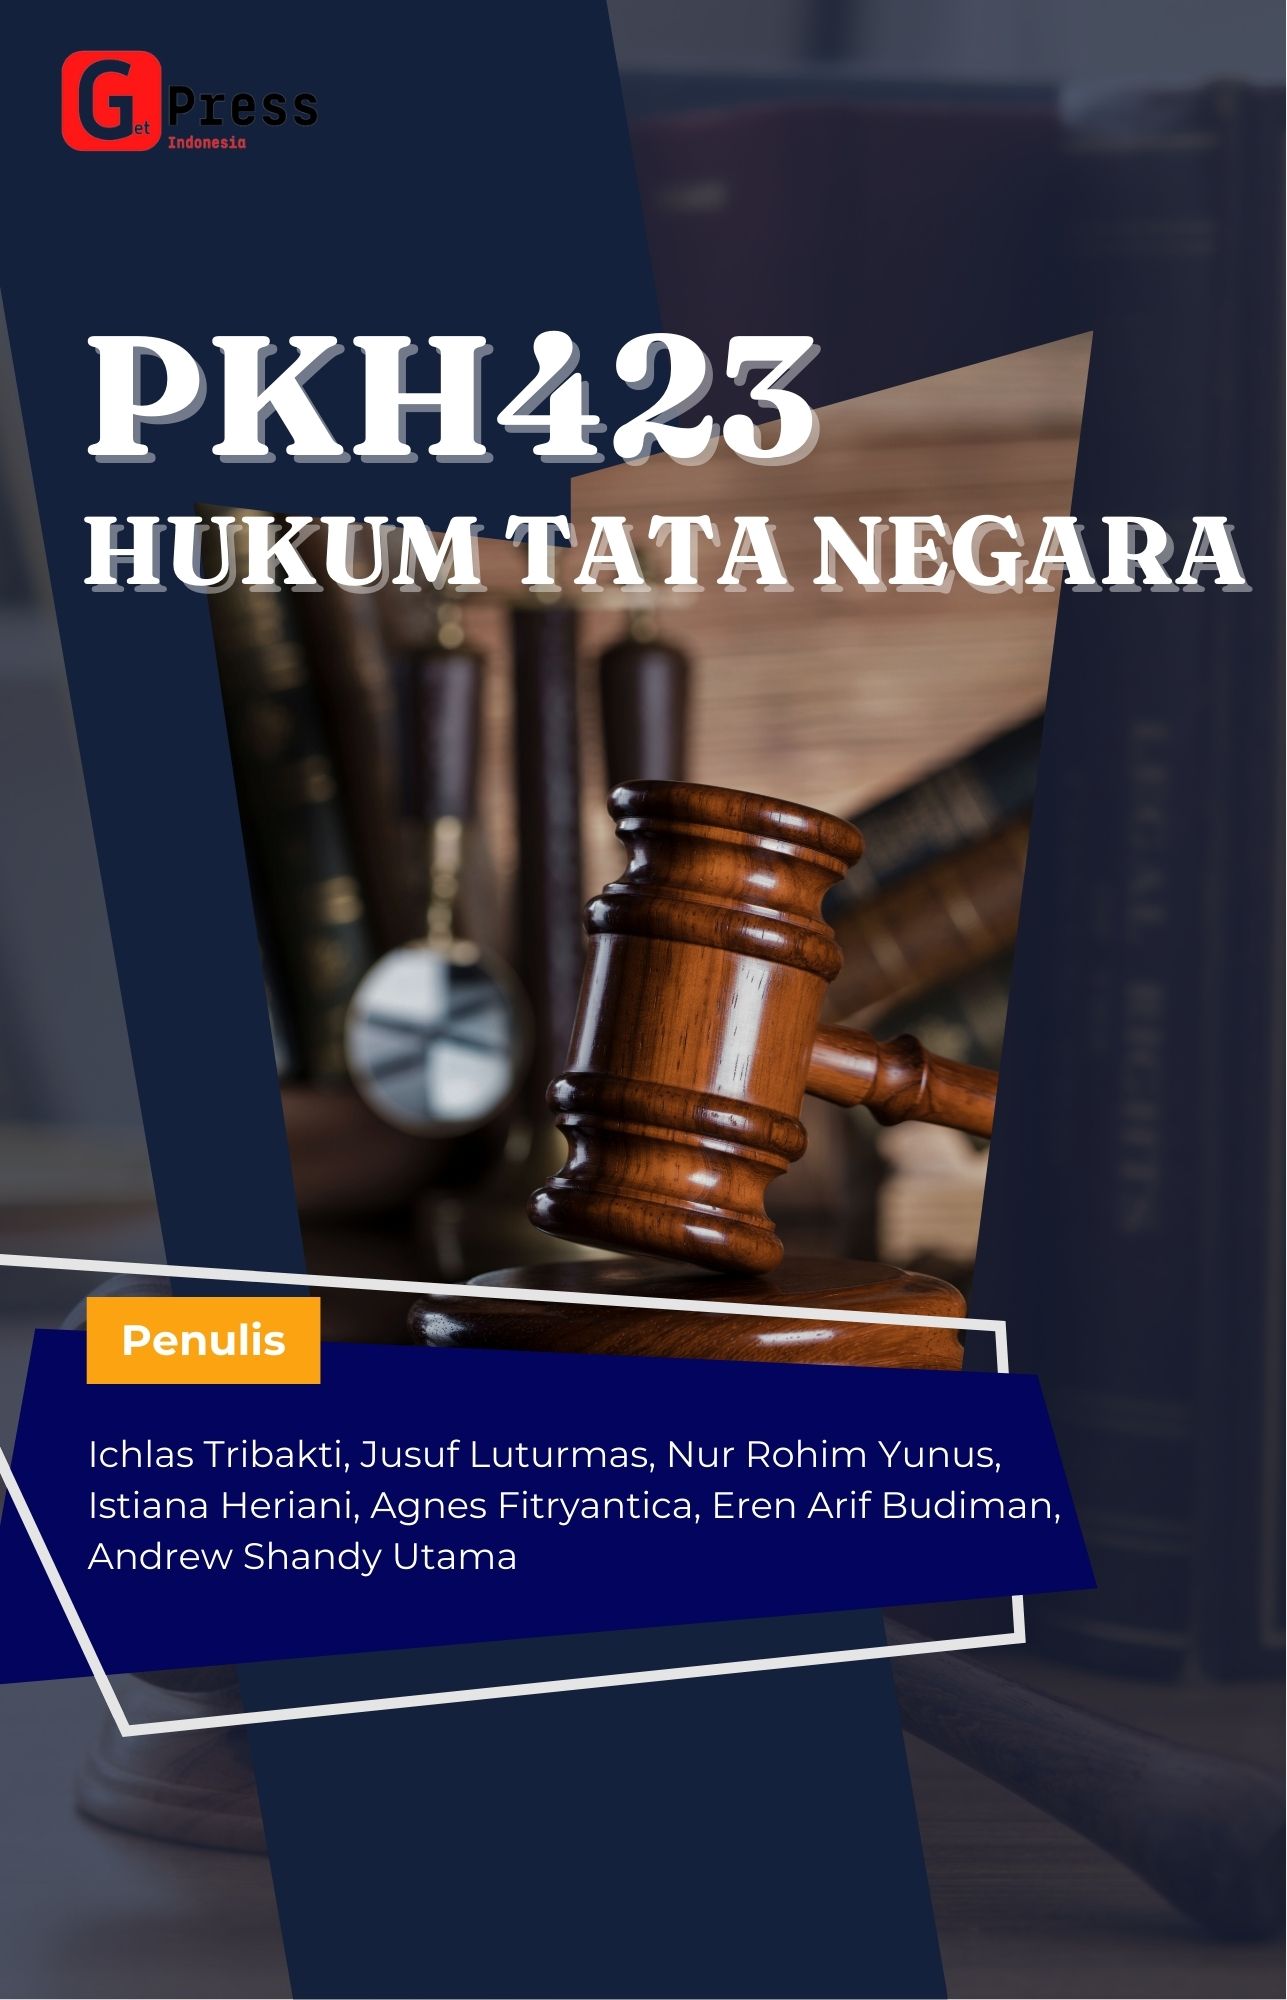 PKH423 HUKUM TATA NEGARA